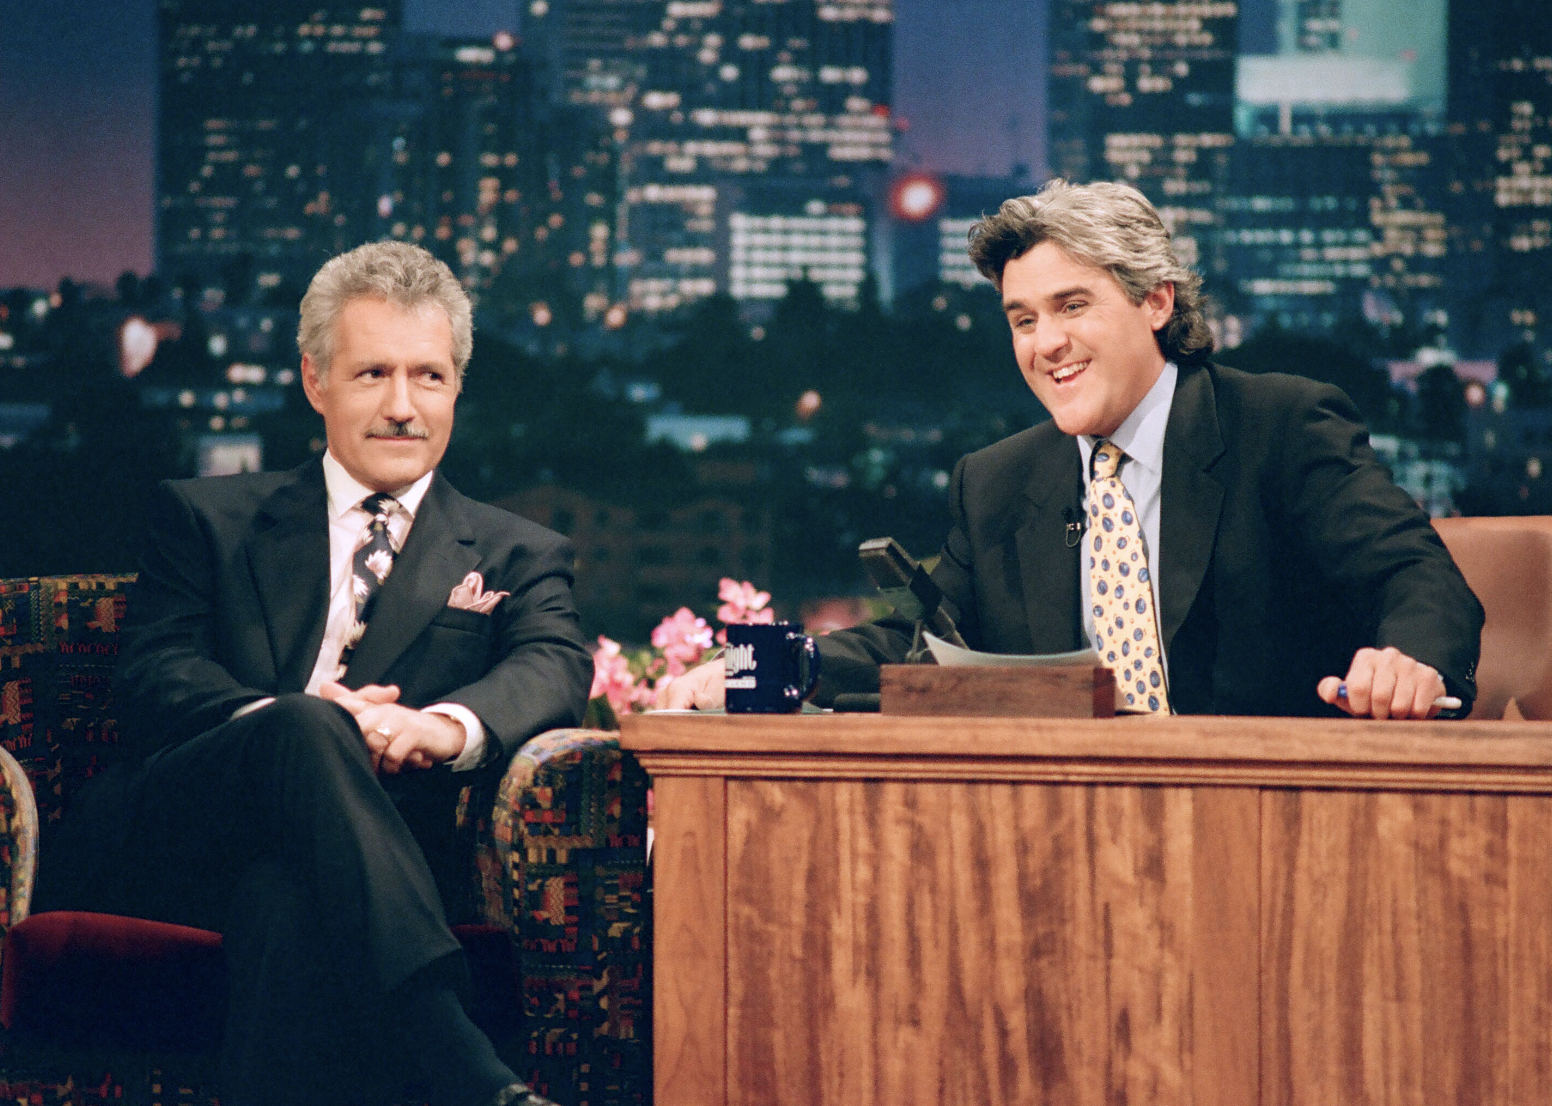 Jay Leno and Alex Trebek on "The Tonight Show with Jay Leno"